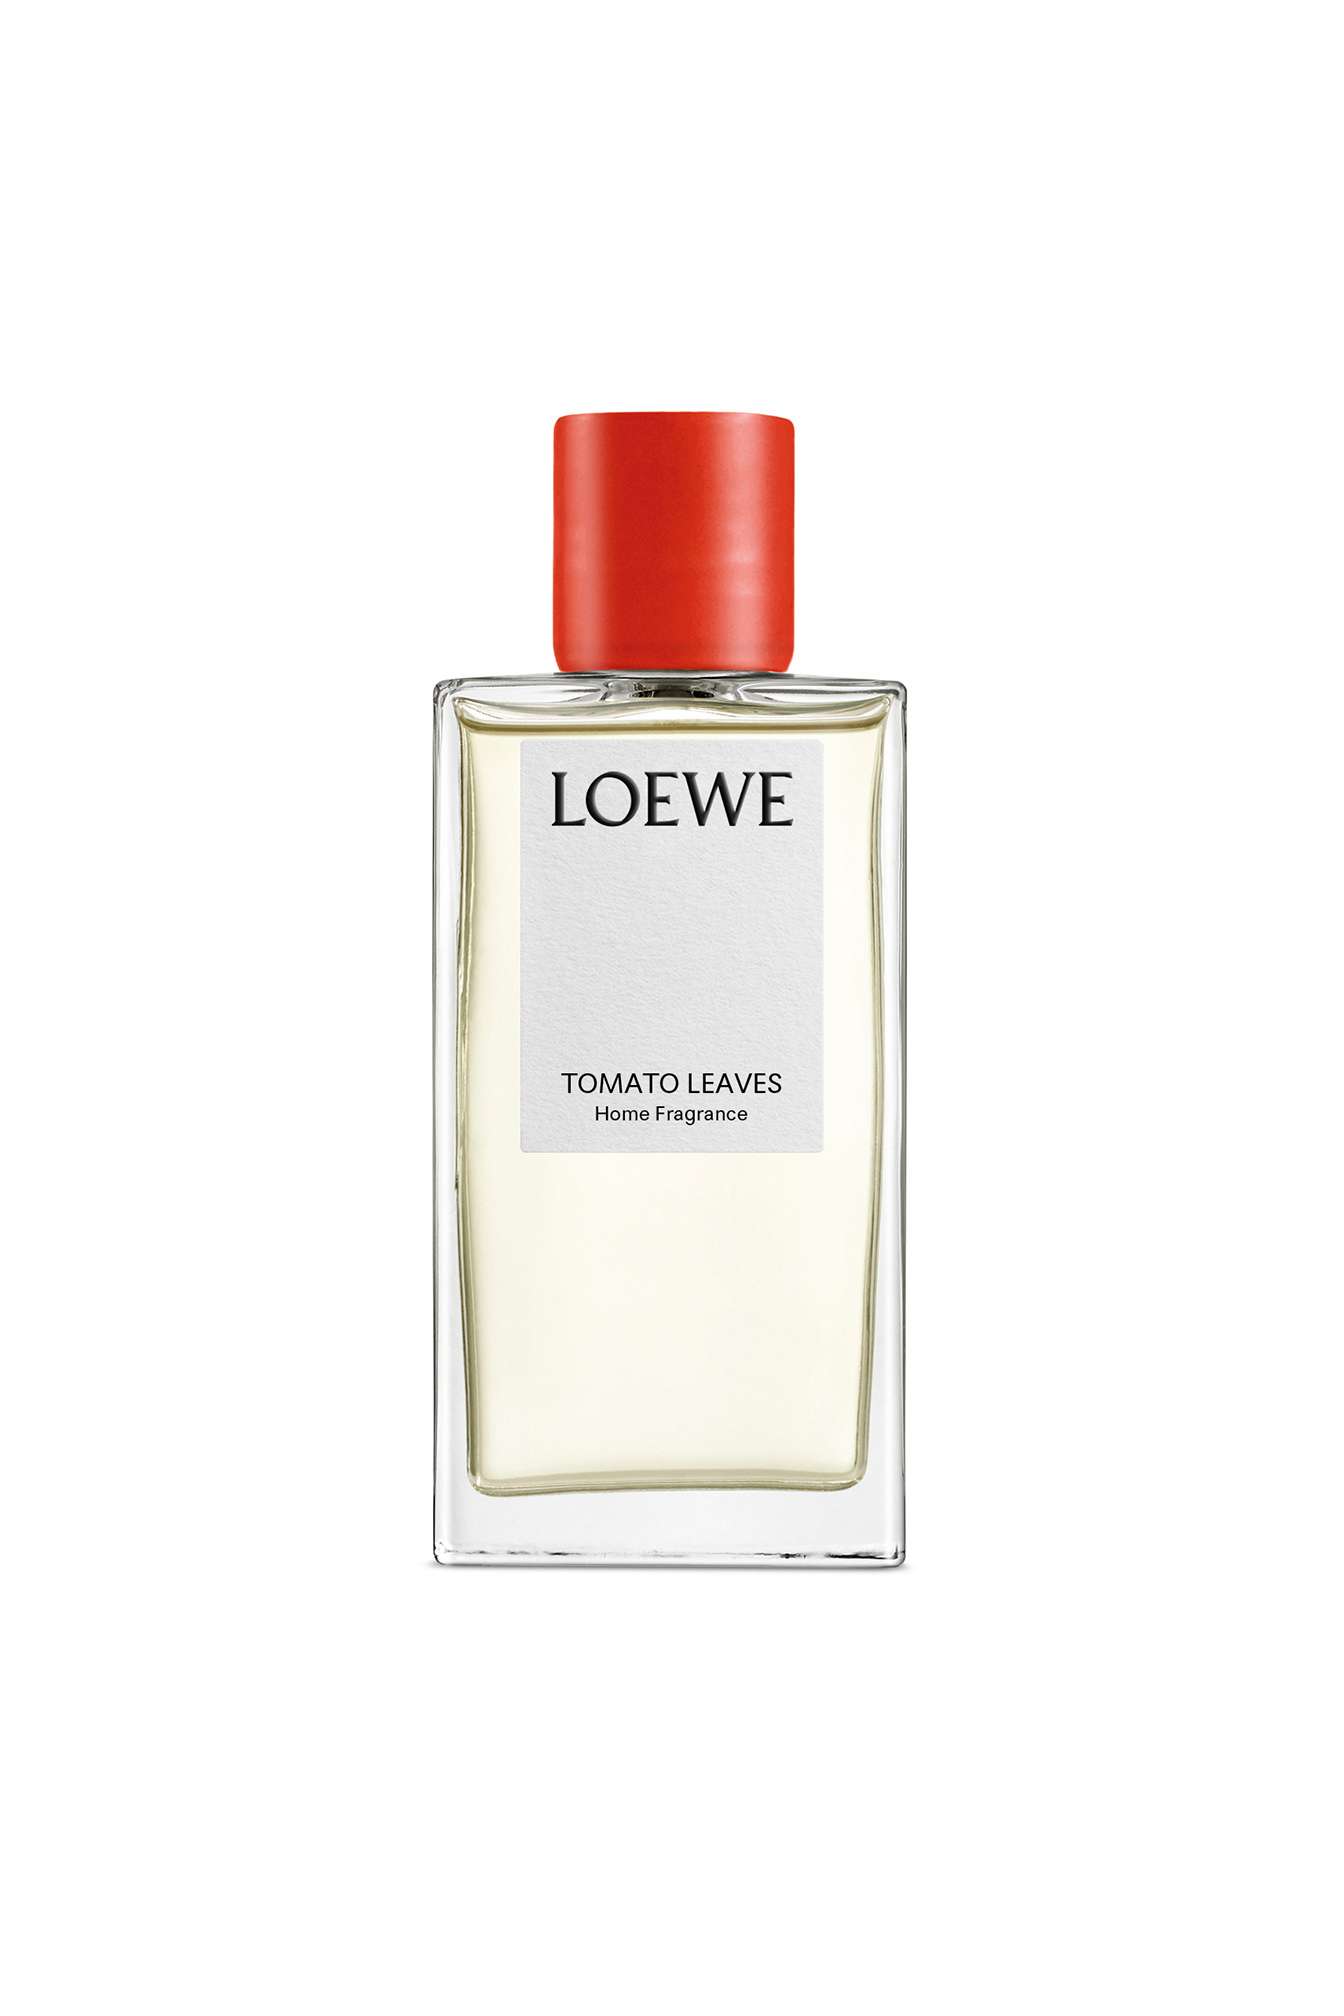 LOEWE-Home-Fragrance-Tomato-Leaves-150ml-Clear-cut